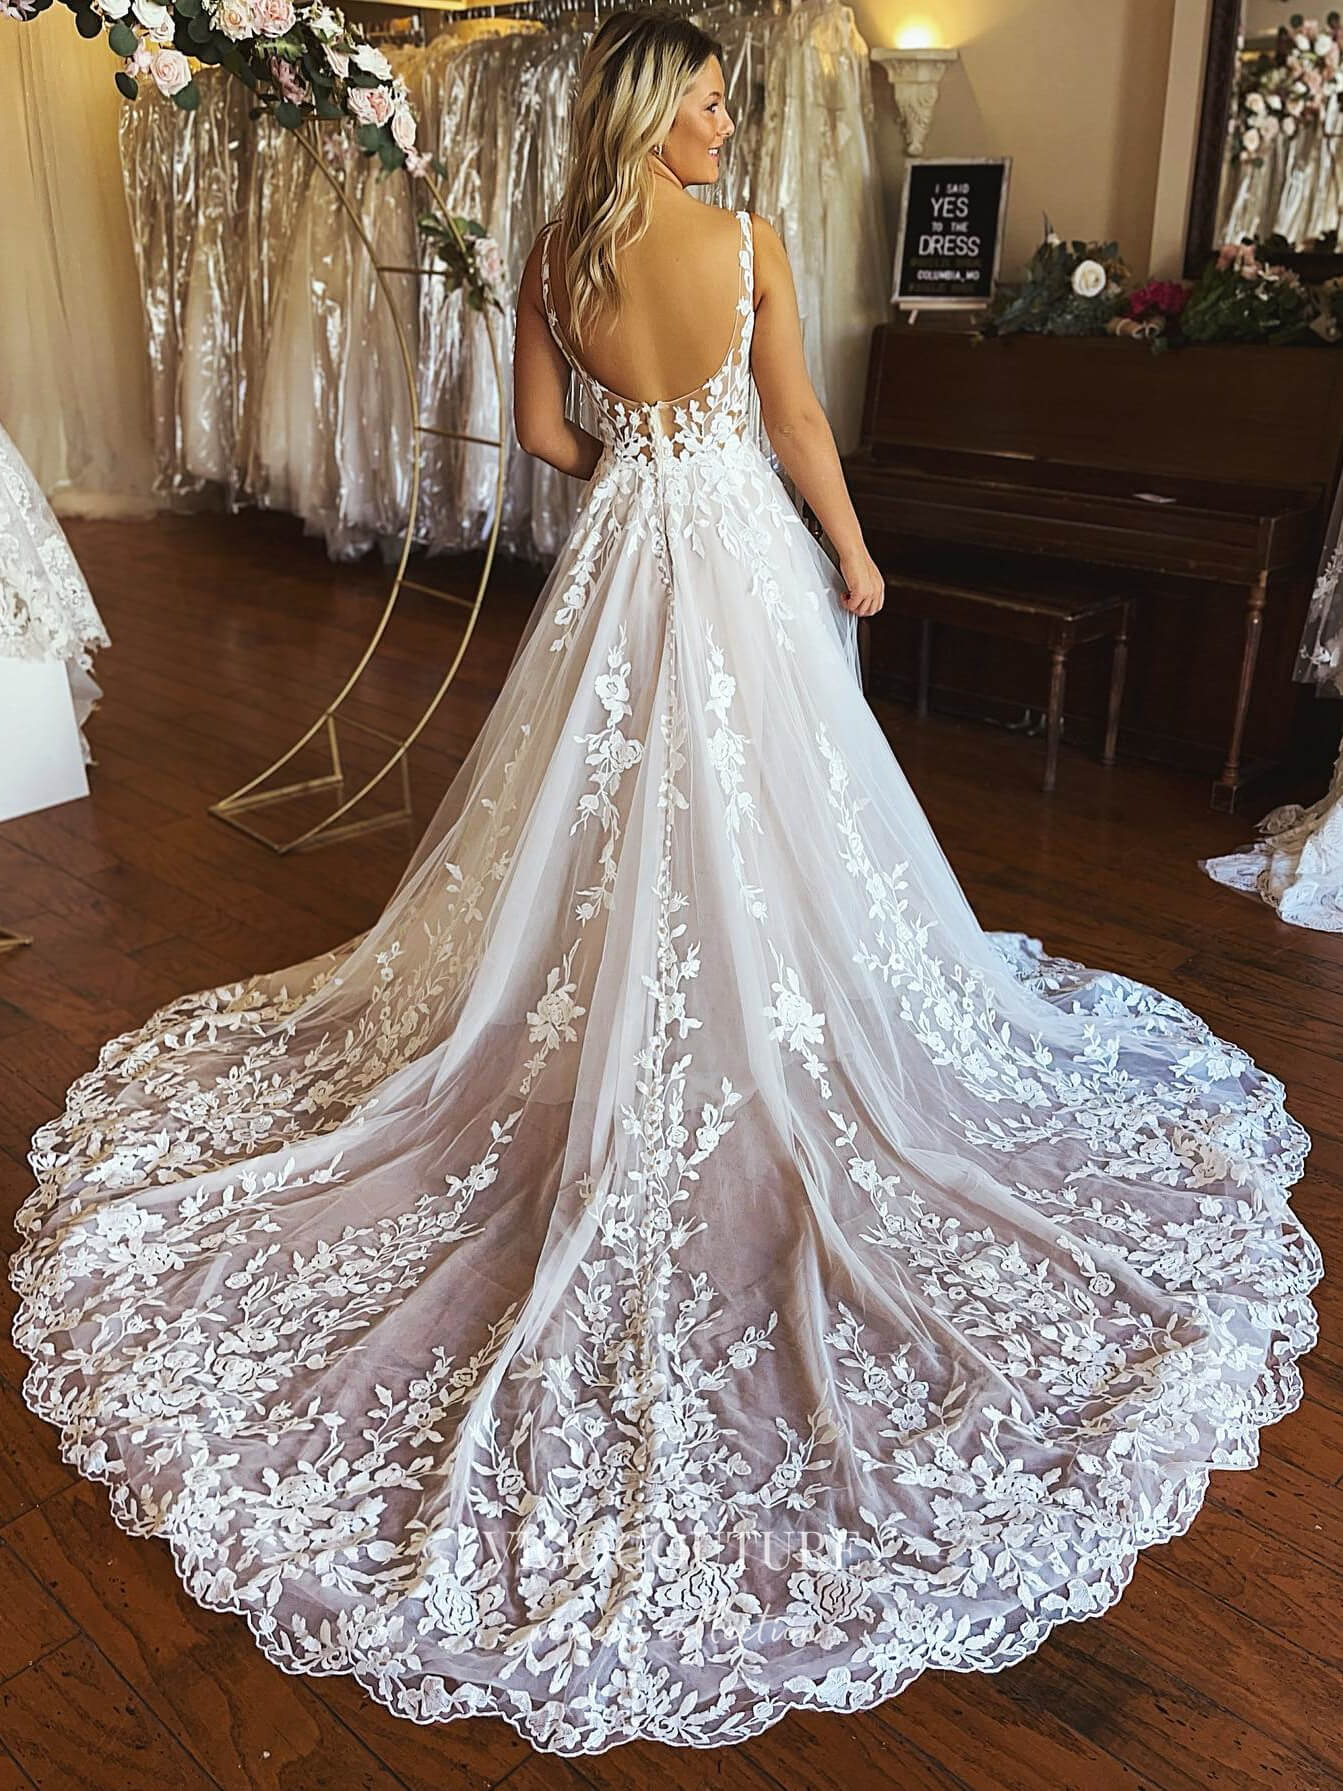 https://vigocouture.com/cdn/shop/products/lace-applique-v-neck-wedding-dresses-chapel-train-bridal-dresses-w0069-wedding-dresses-vigocouture-as-pictured-us2.jpg?v=1669505448